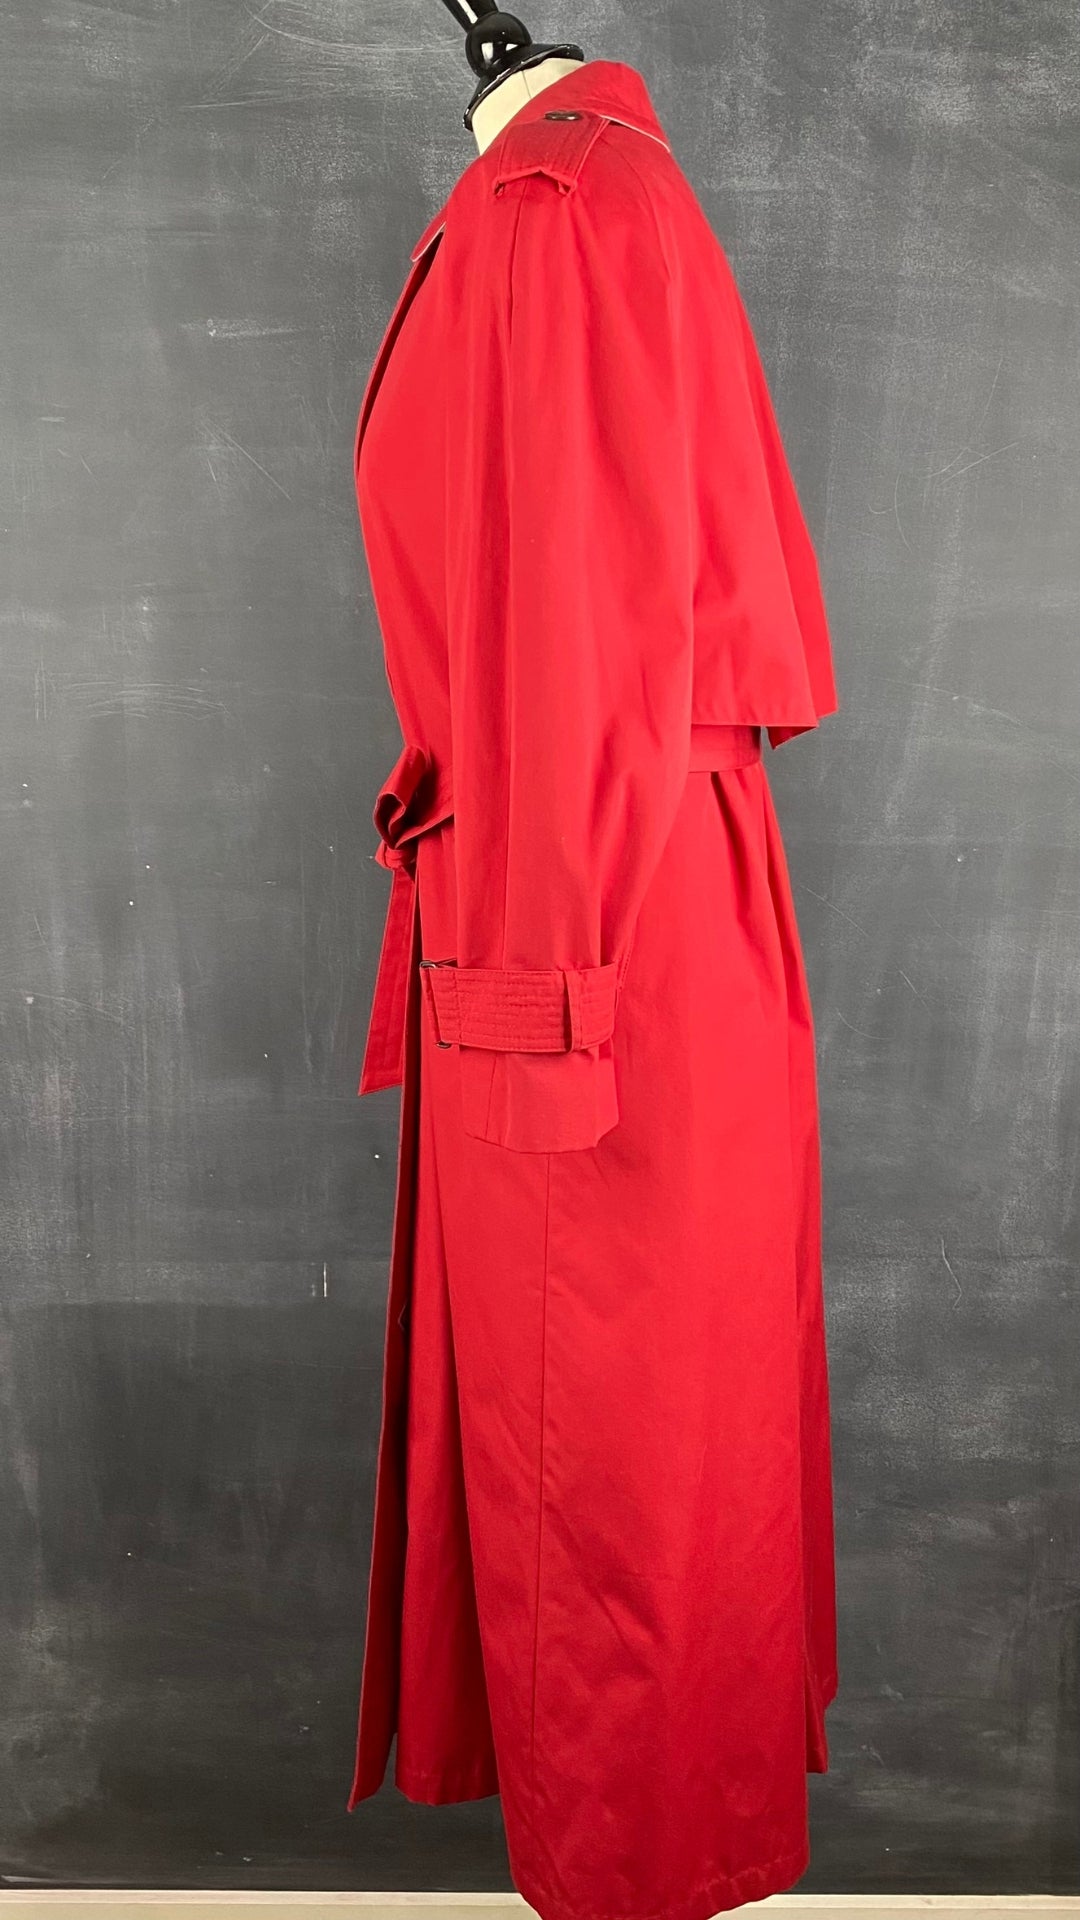 Manteau long vintage style trench rouge, taille small/medium. Vue de côté.